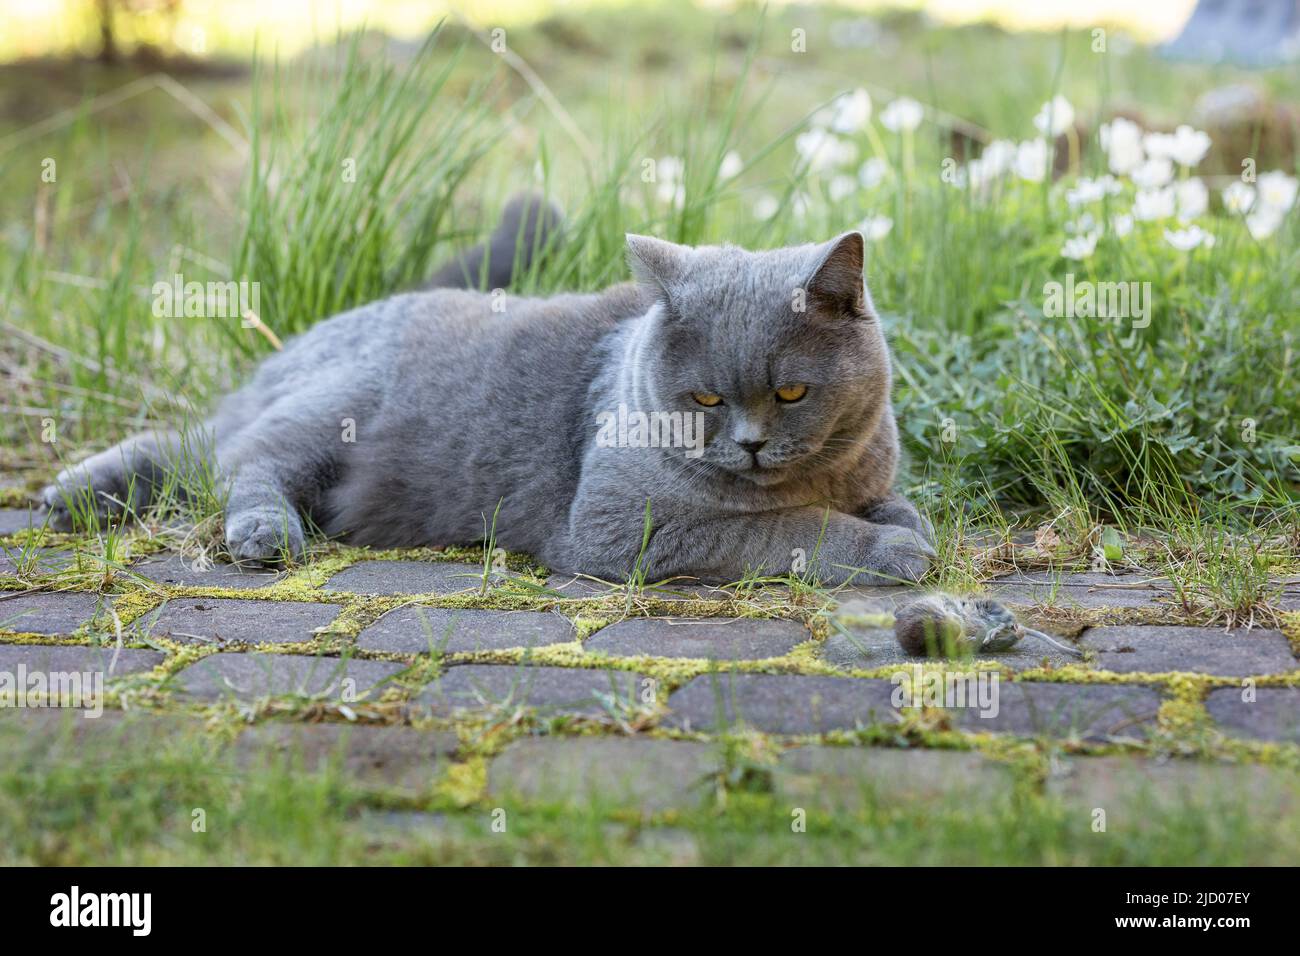 Gatto grigio britannico catturato il topo mentre caccia all'aperto, primo piano. Foto di alta qualità Foto Stock